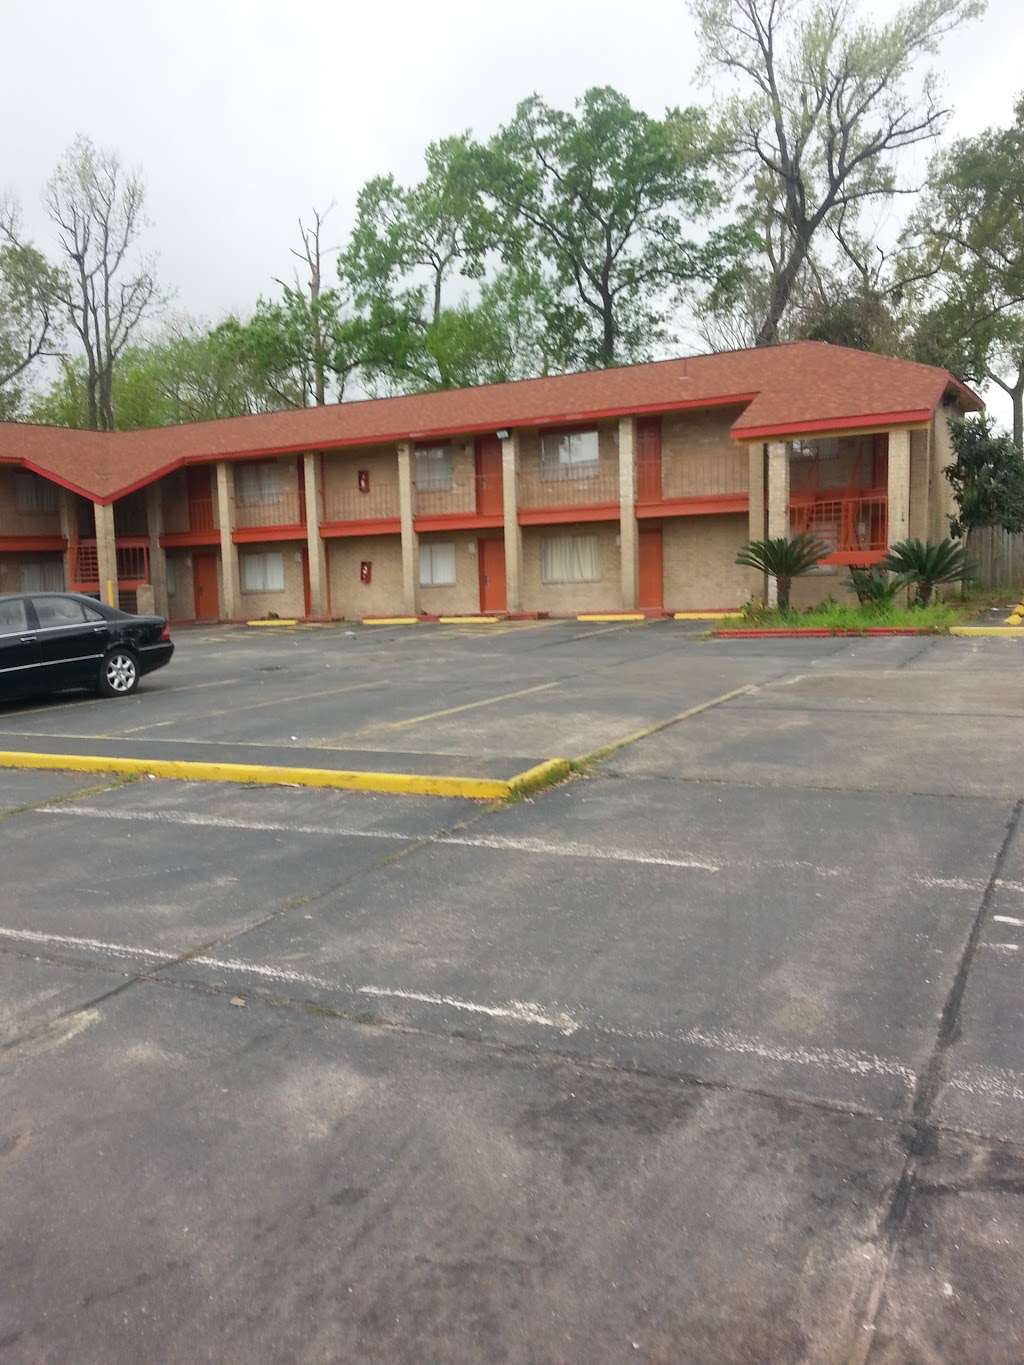 Knoxwood Motels | 8811 Knoxwood St, Houston, TX 77016, USA